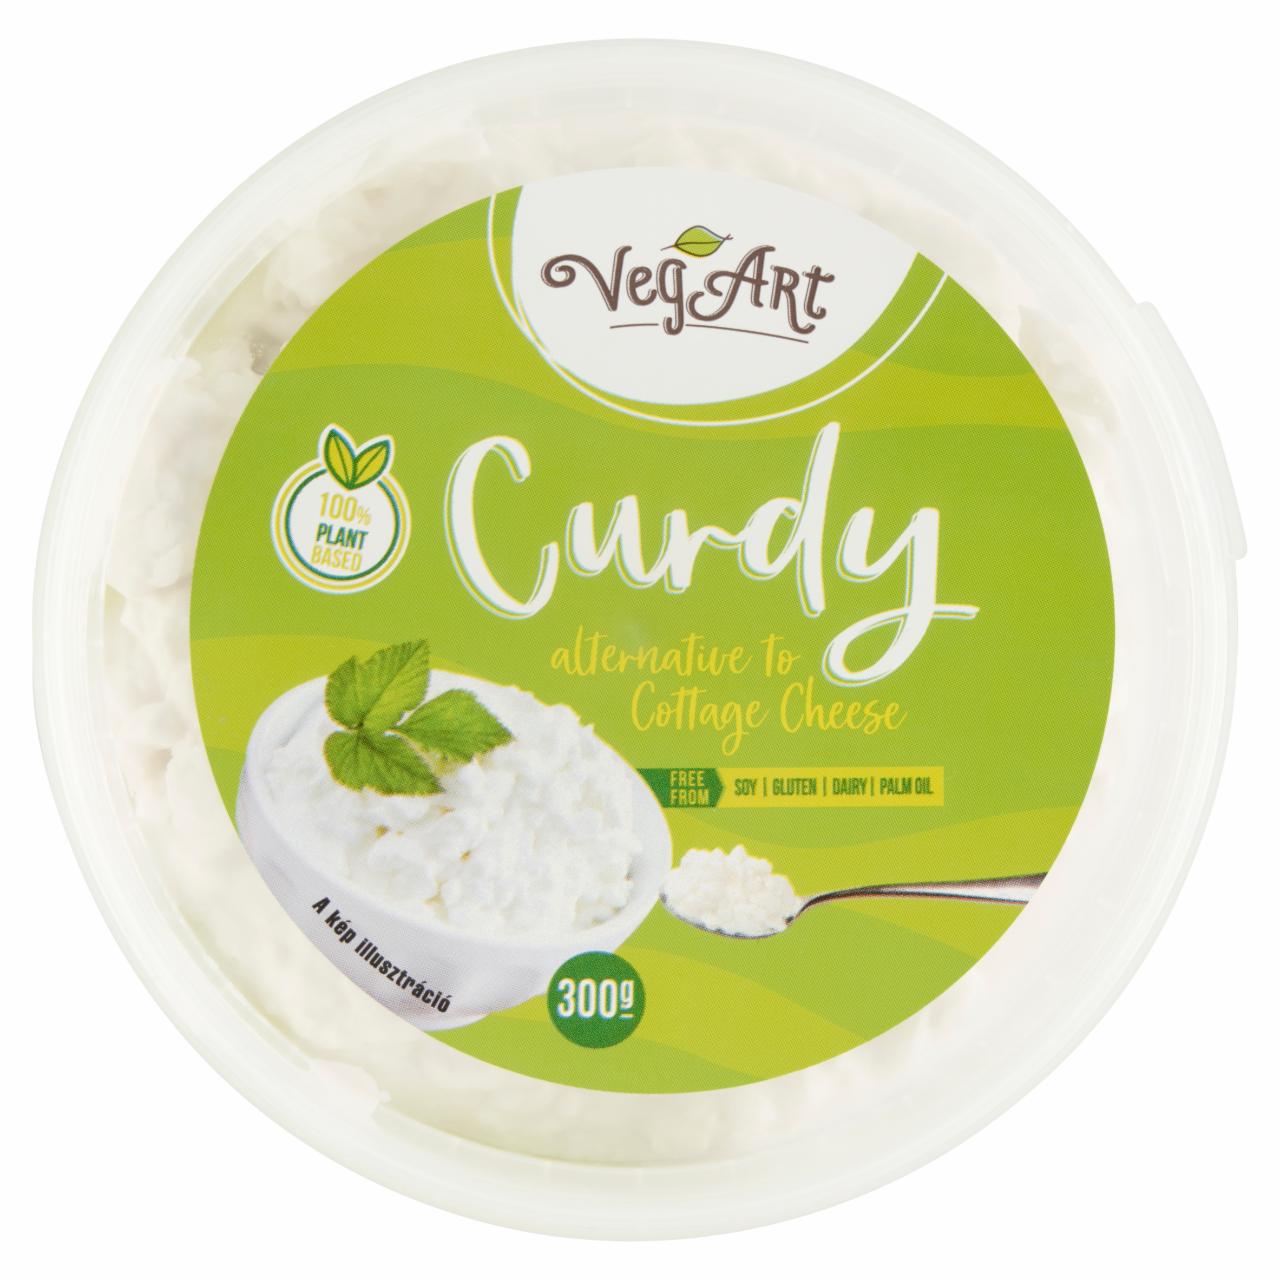 Képek - VegArt Curdy növényi alapú, túrót helyettesítő vegán élelmiszer készítmény 300 g